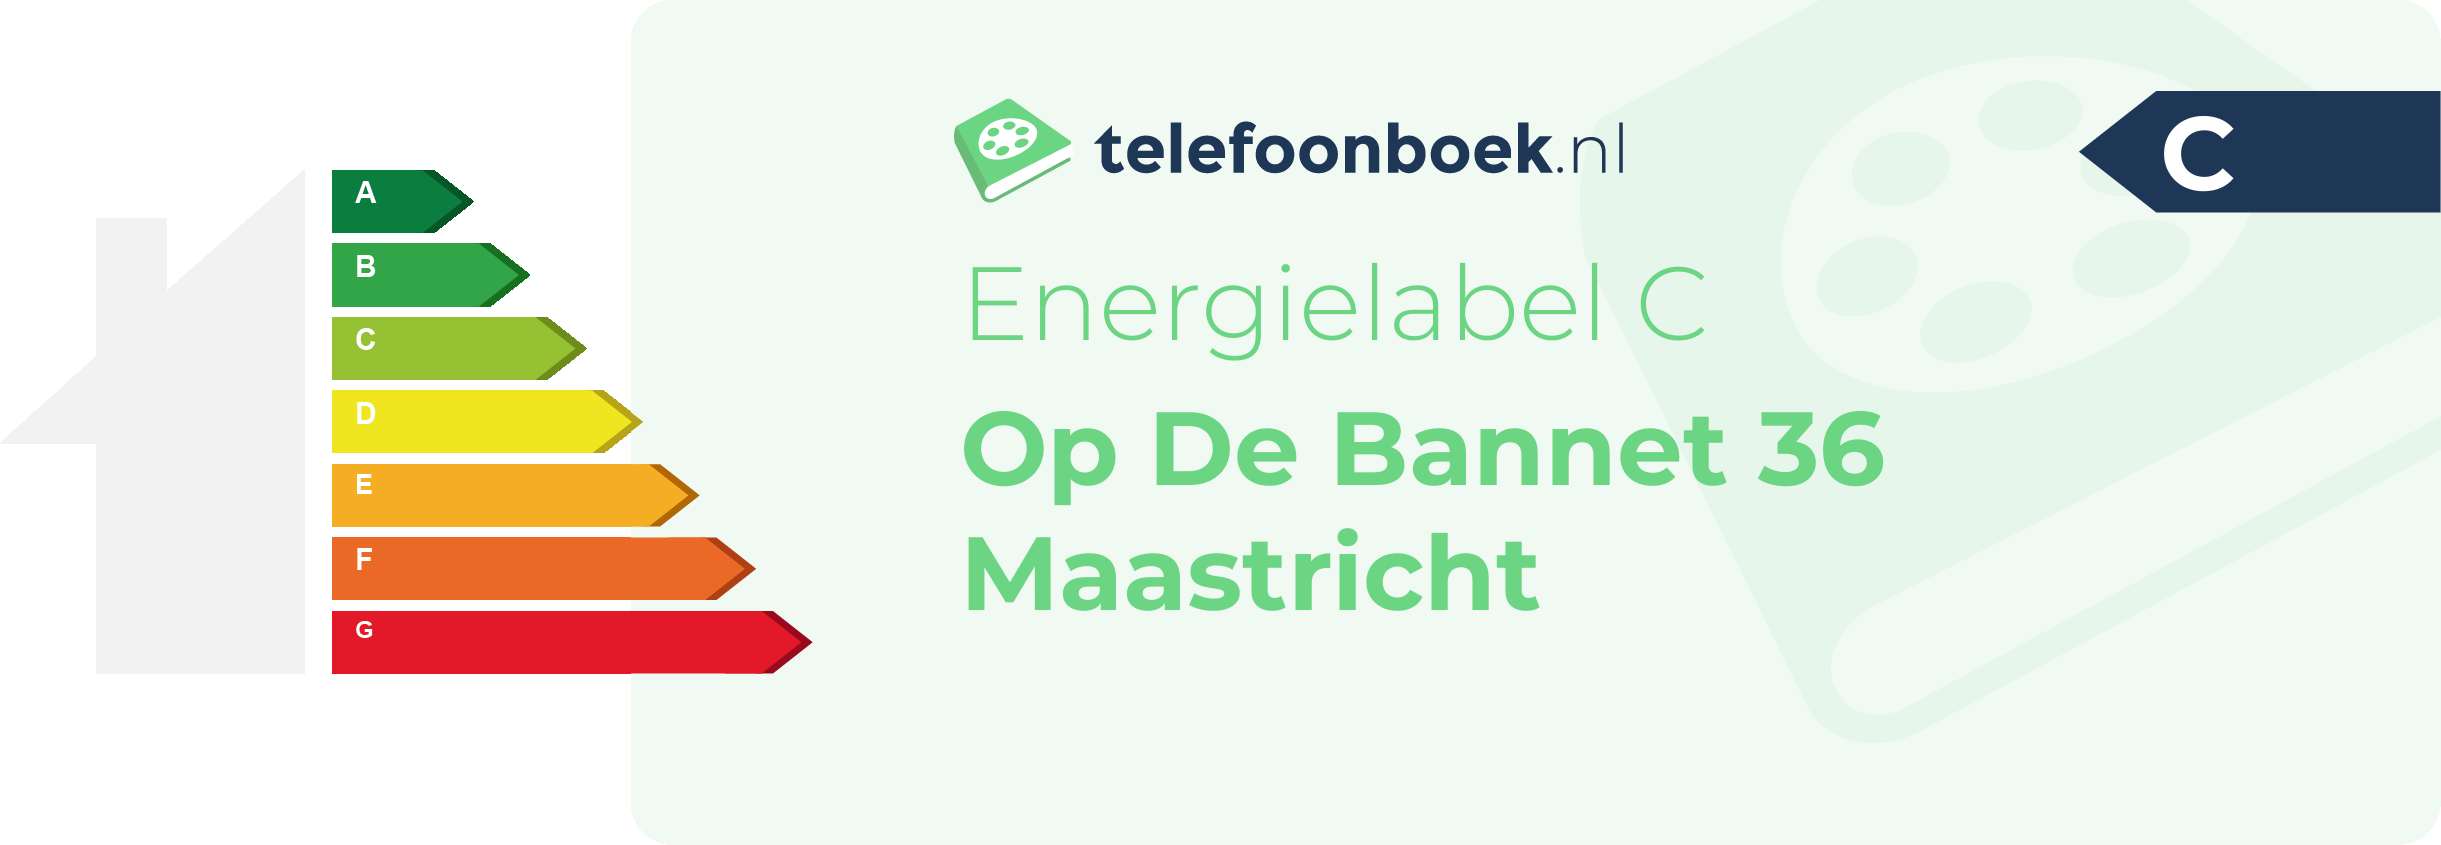 Energielabel Op De Bannet 36 Maastricht